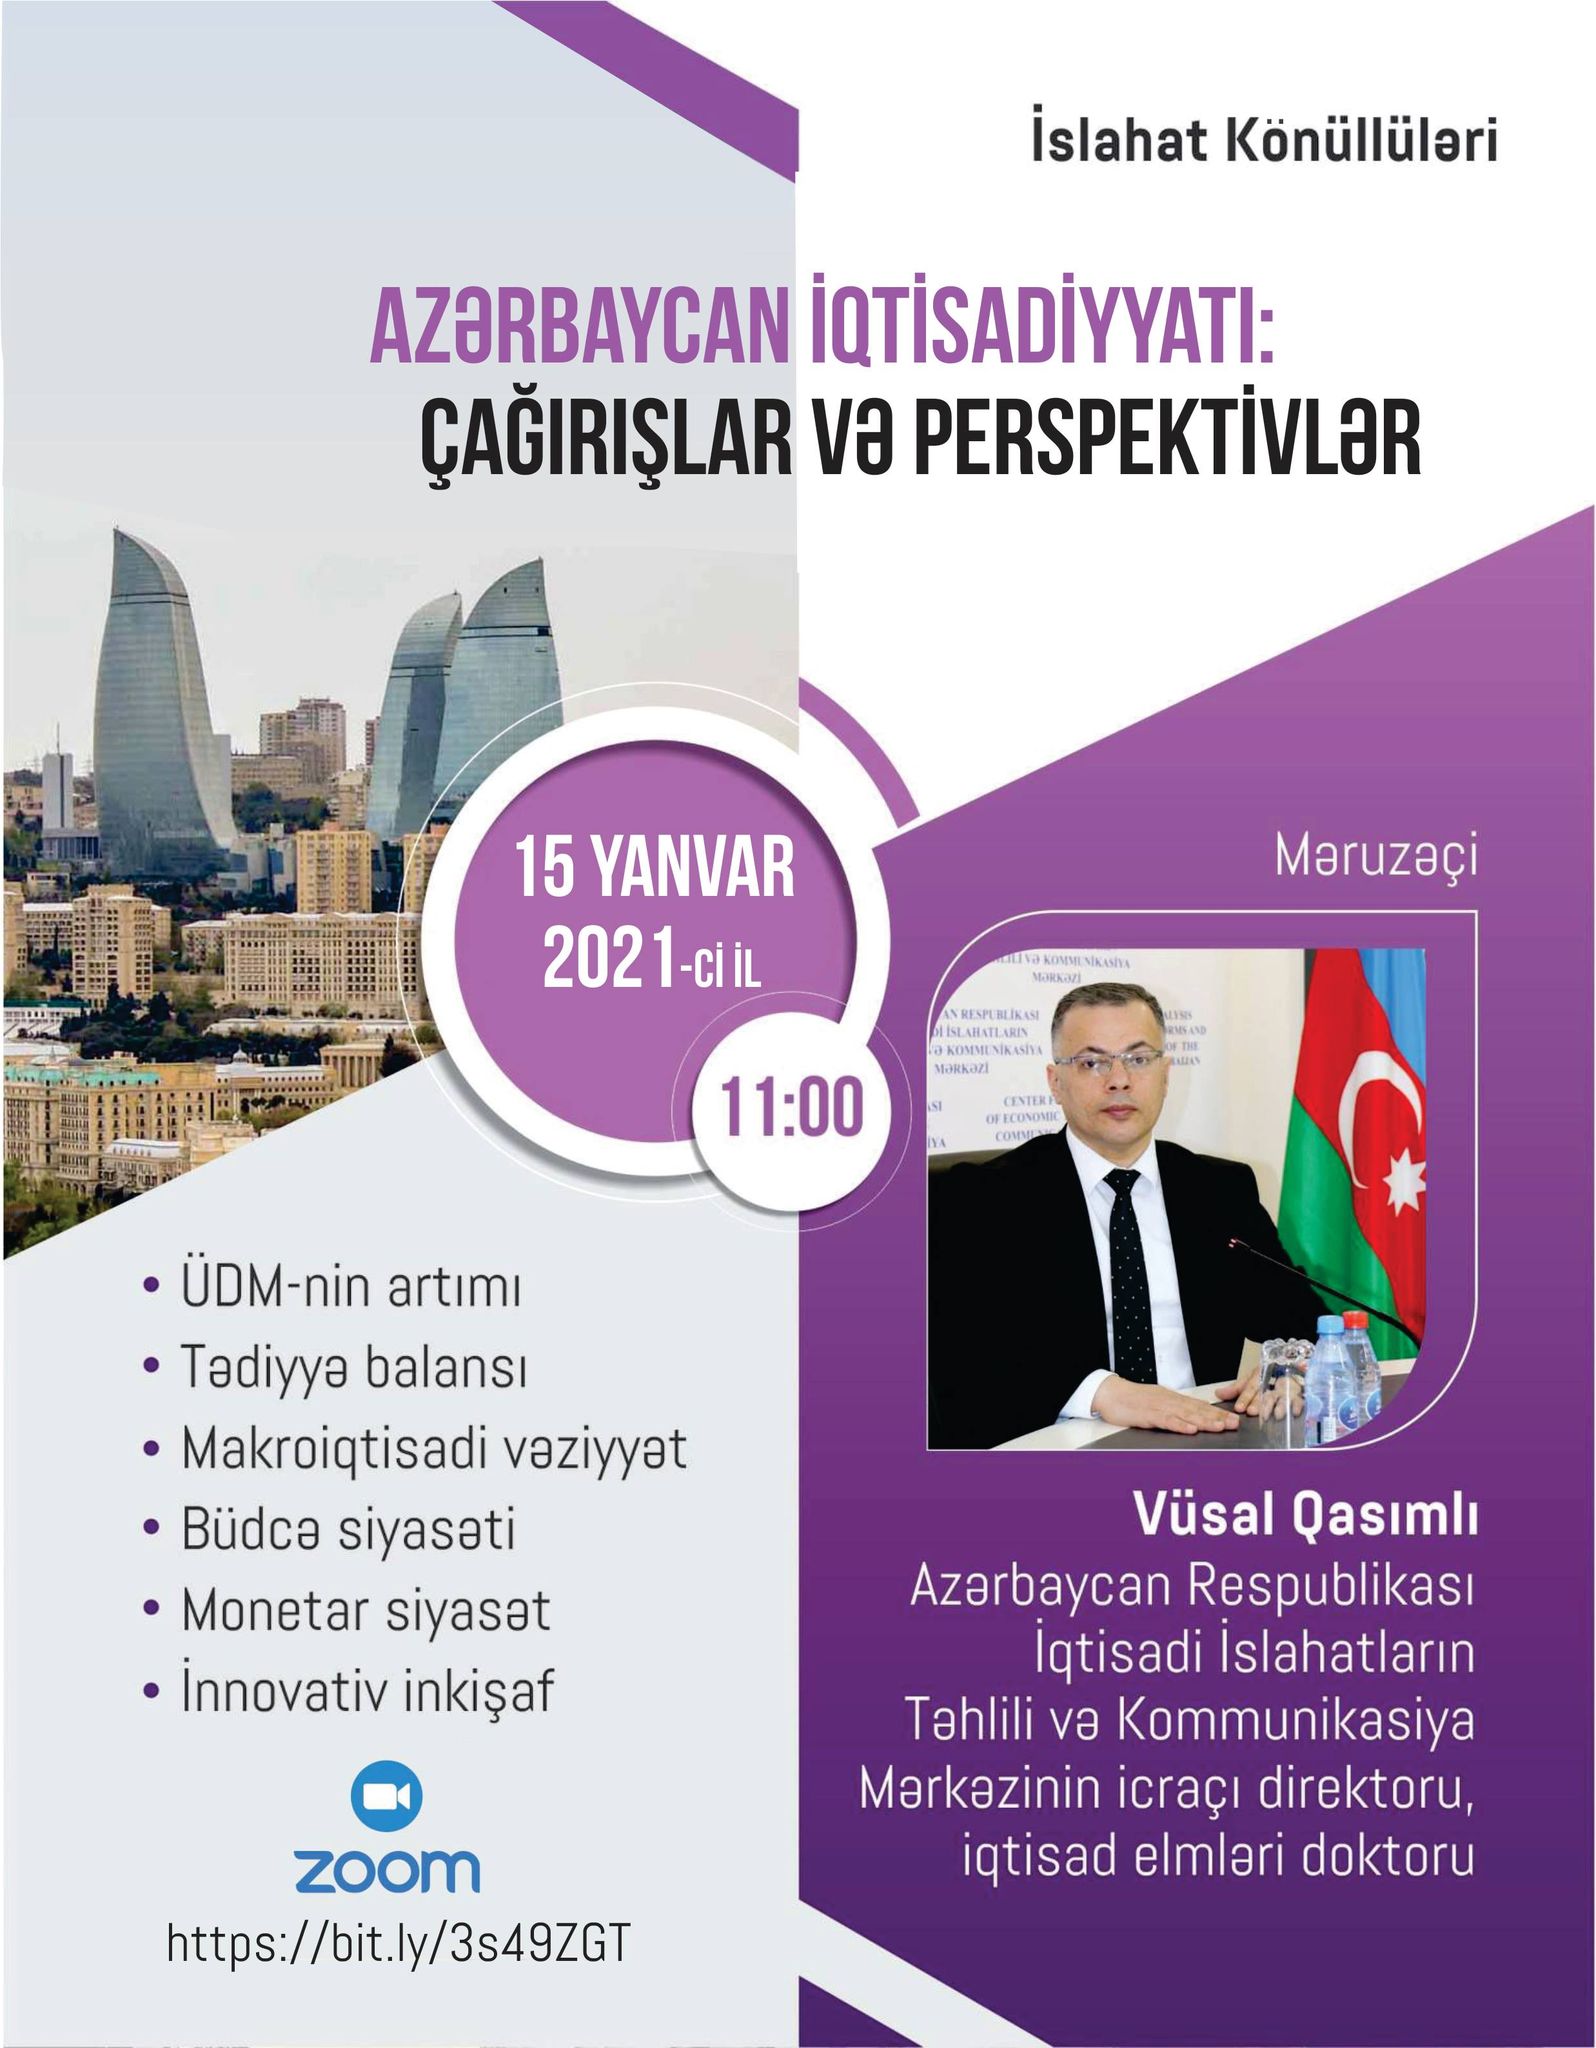 İslahat Könüllüləri Təşkilatının təşəbbüsü ilə “Azərbaycan iqtisadiyyatı: Çağırışlar və perspektivlər” mövzusunda videokonfrans keçirilib